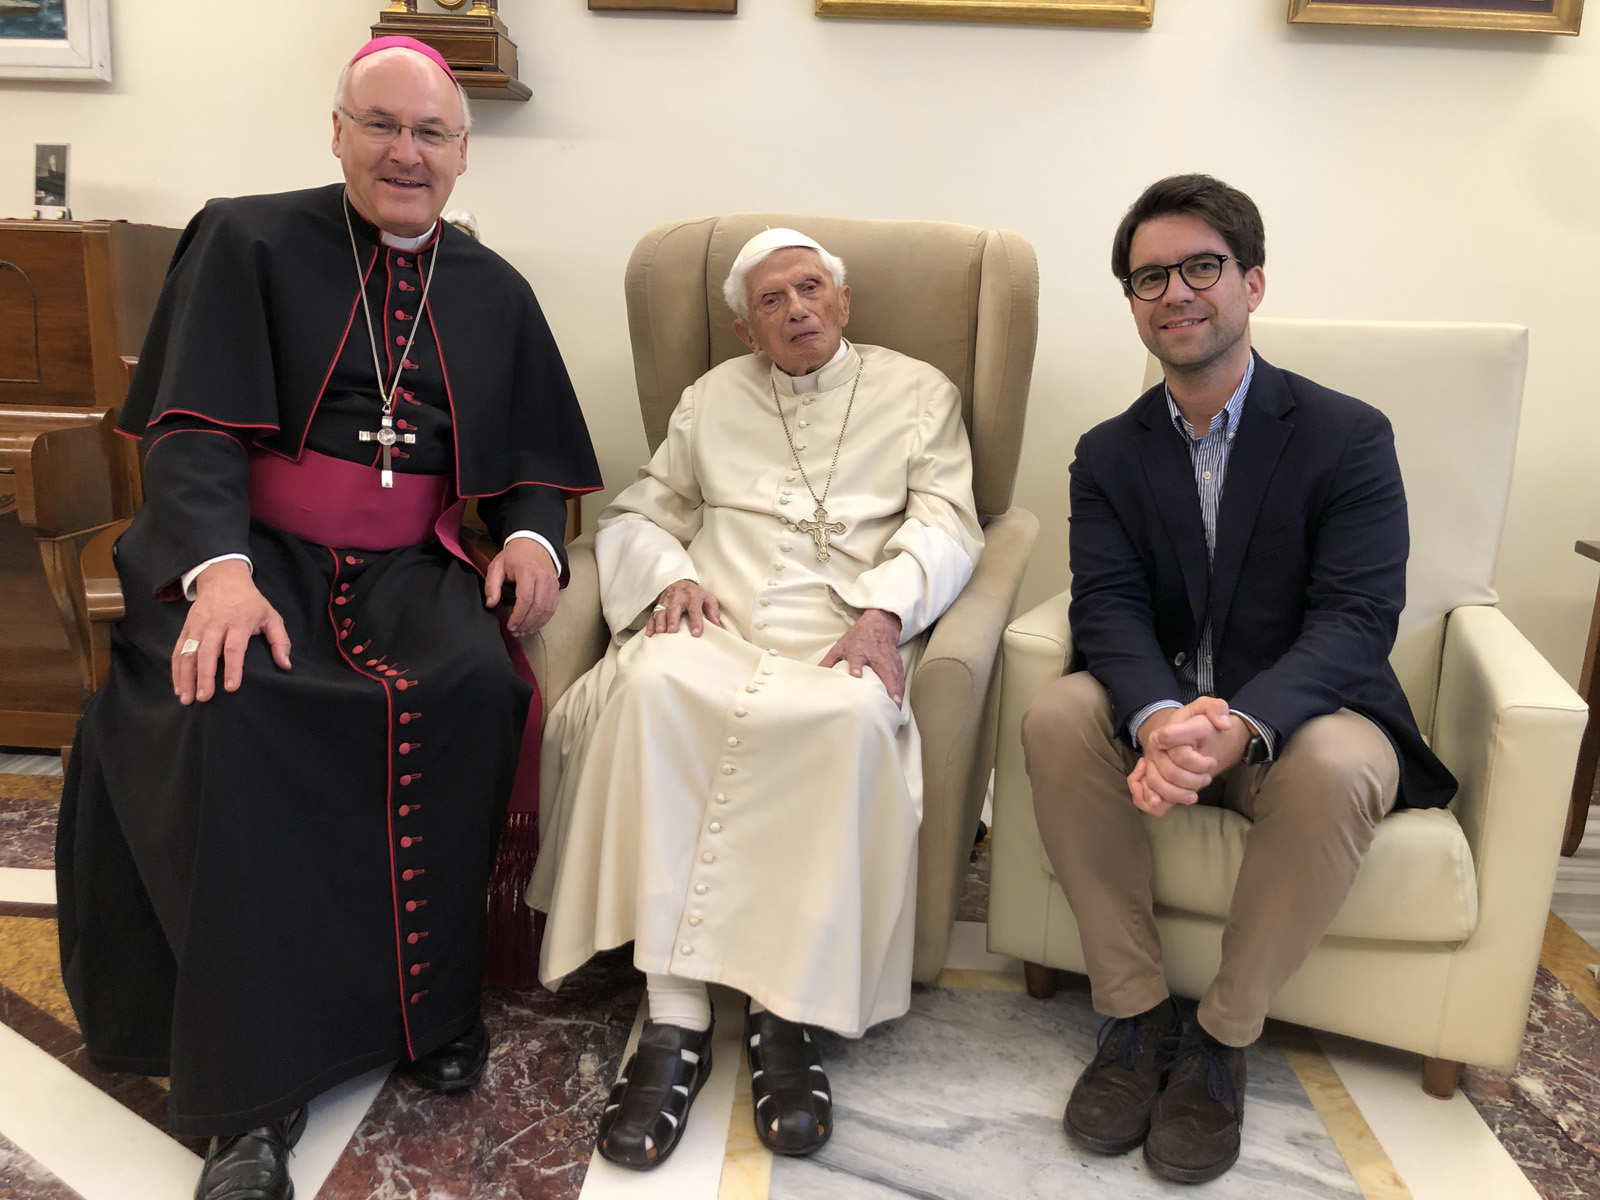 Gabriel Weiten am 23. September 2022 gemeinsam mit Bischof Dr. Rudolf Voderholzer zu Besuch bei Papst em. Benedikt XVI. im Kloster "Mater ecclesiae" im Vatikan. 